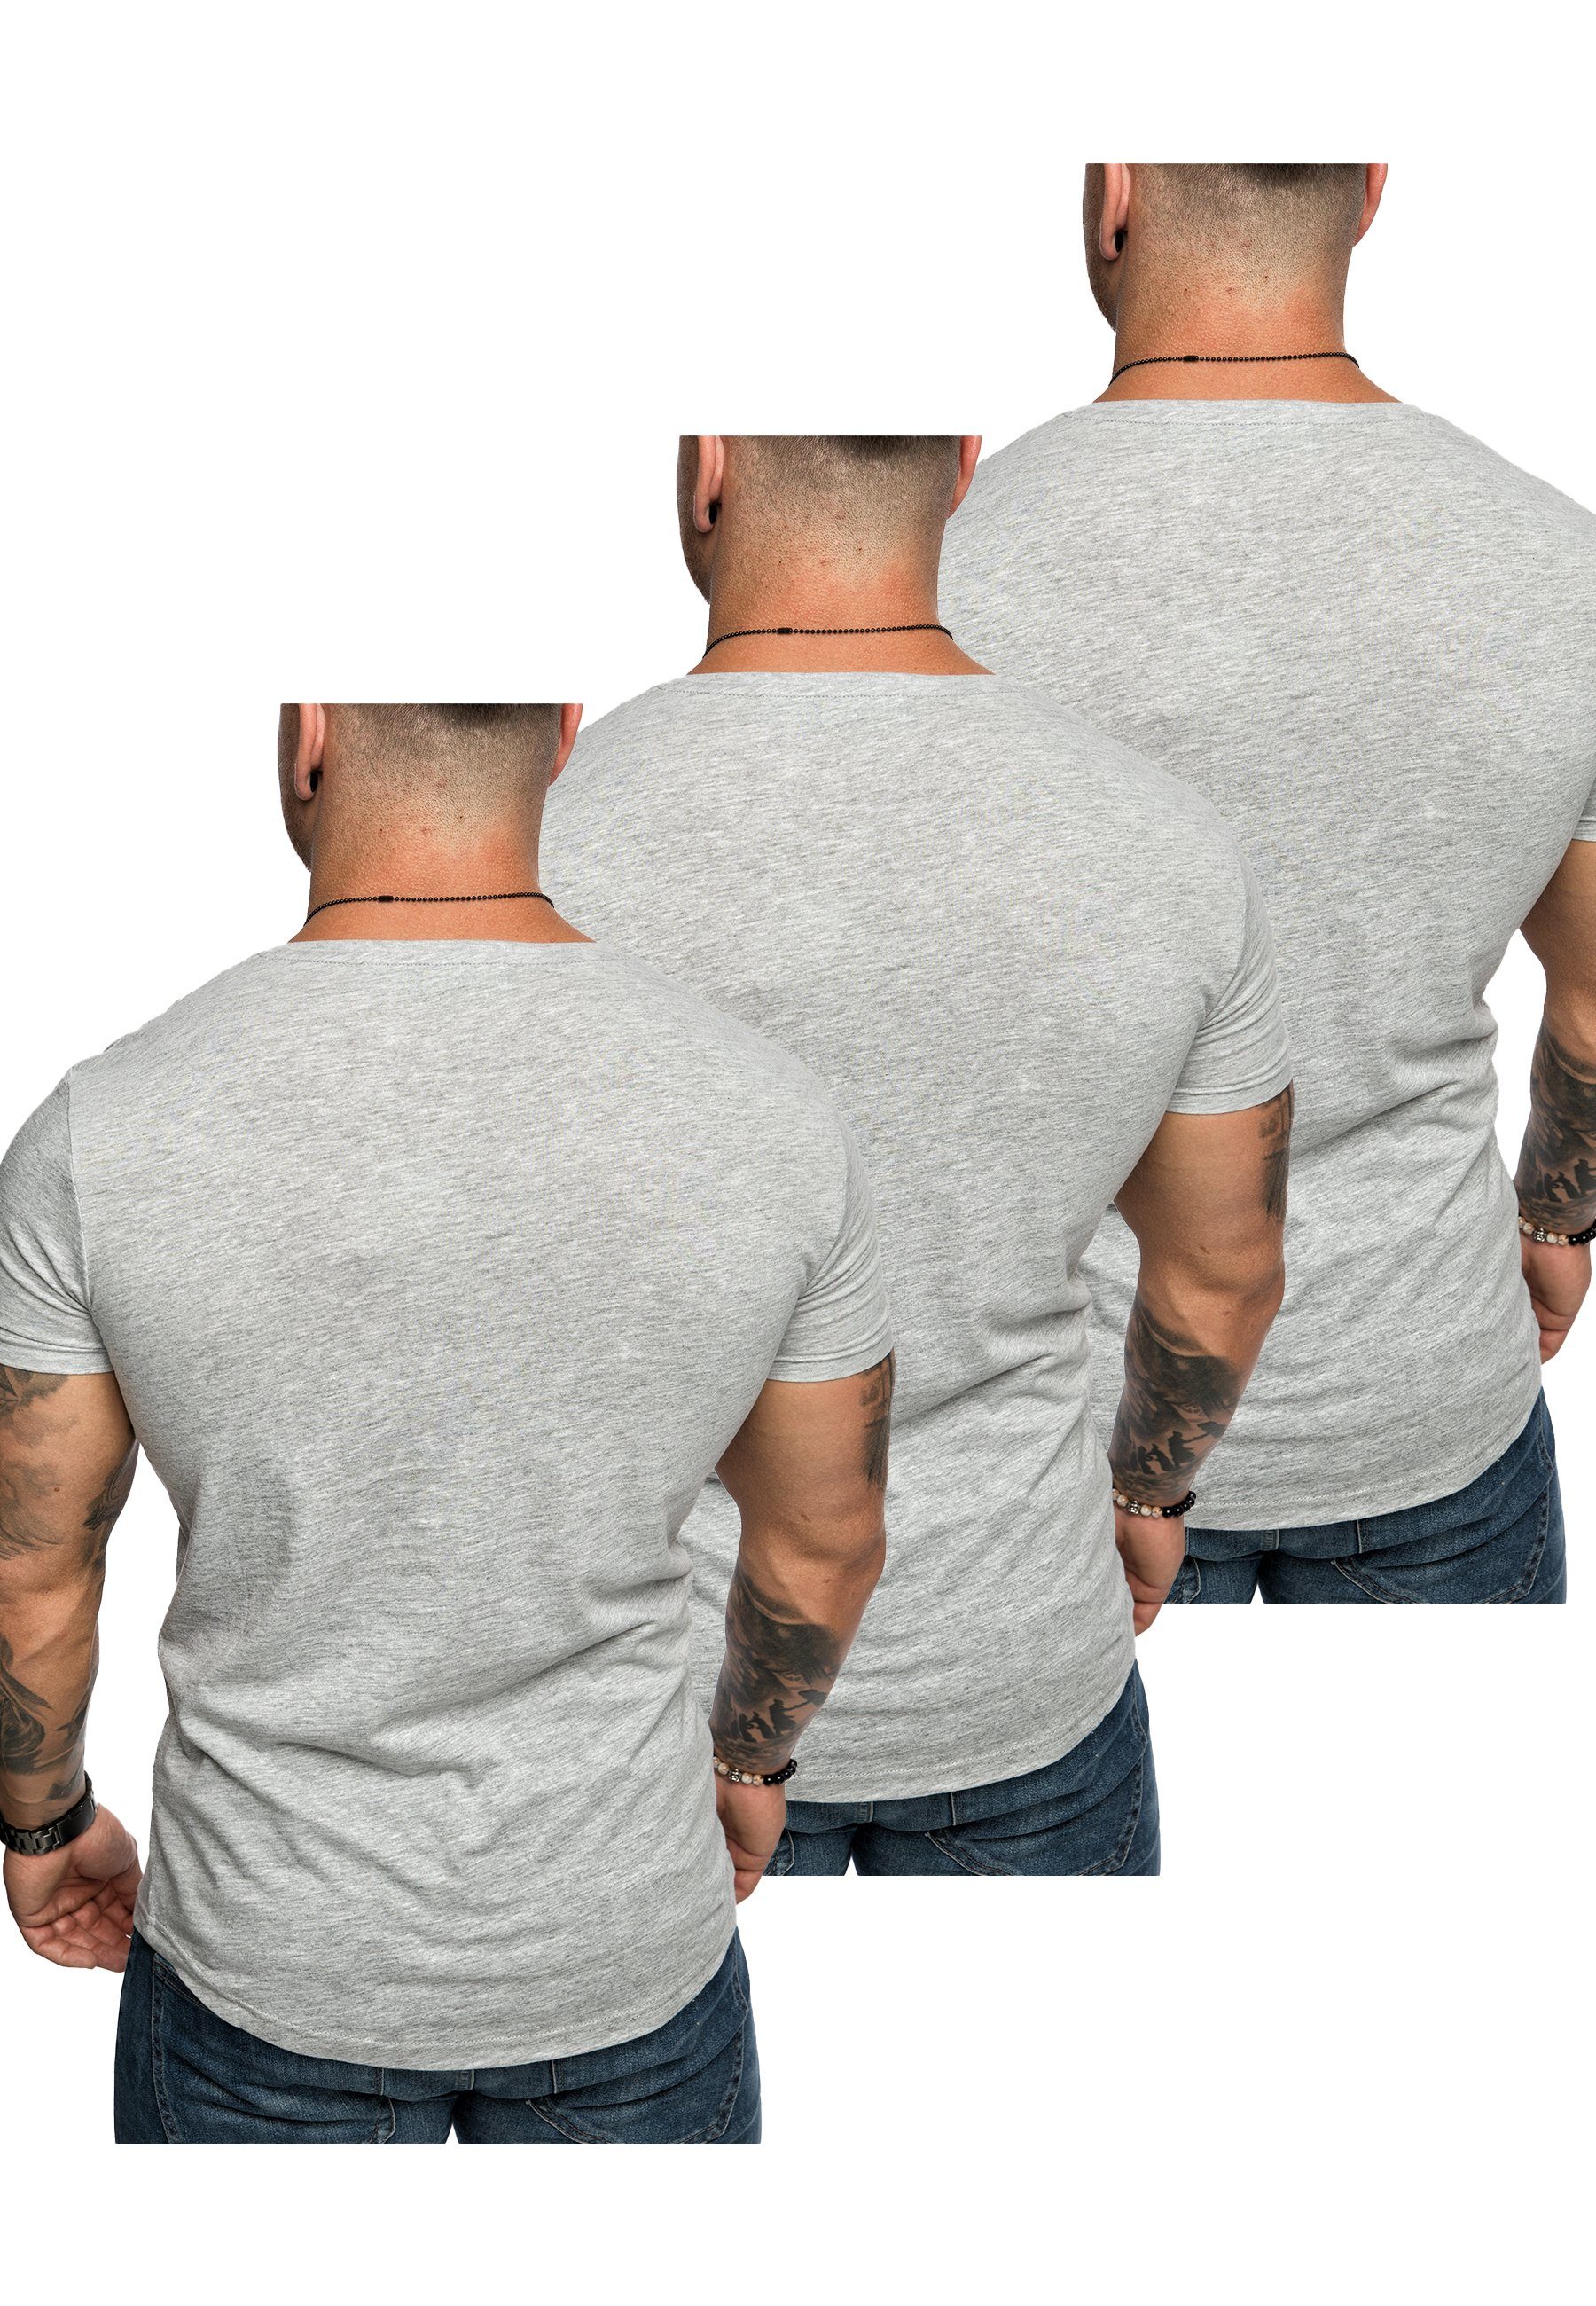 Oversize T-Shirt V-Ausschnitt 3er-Pack Grau) Herren Basic (3x T-Shirts mit Amaci&Sons 3. T-Shirt BELLEVUE (3er-Pack)